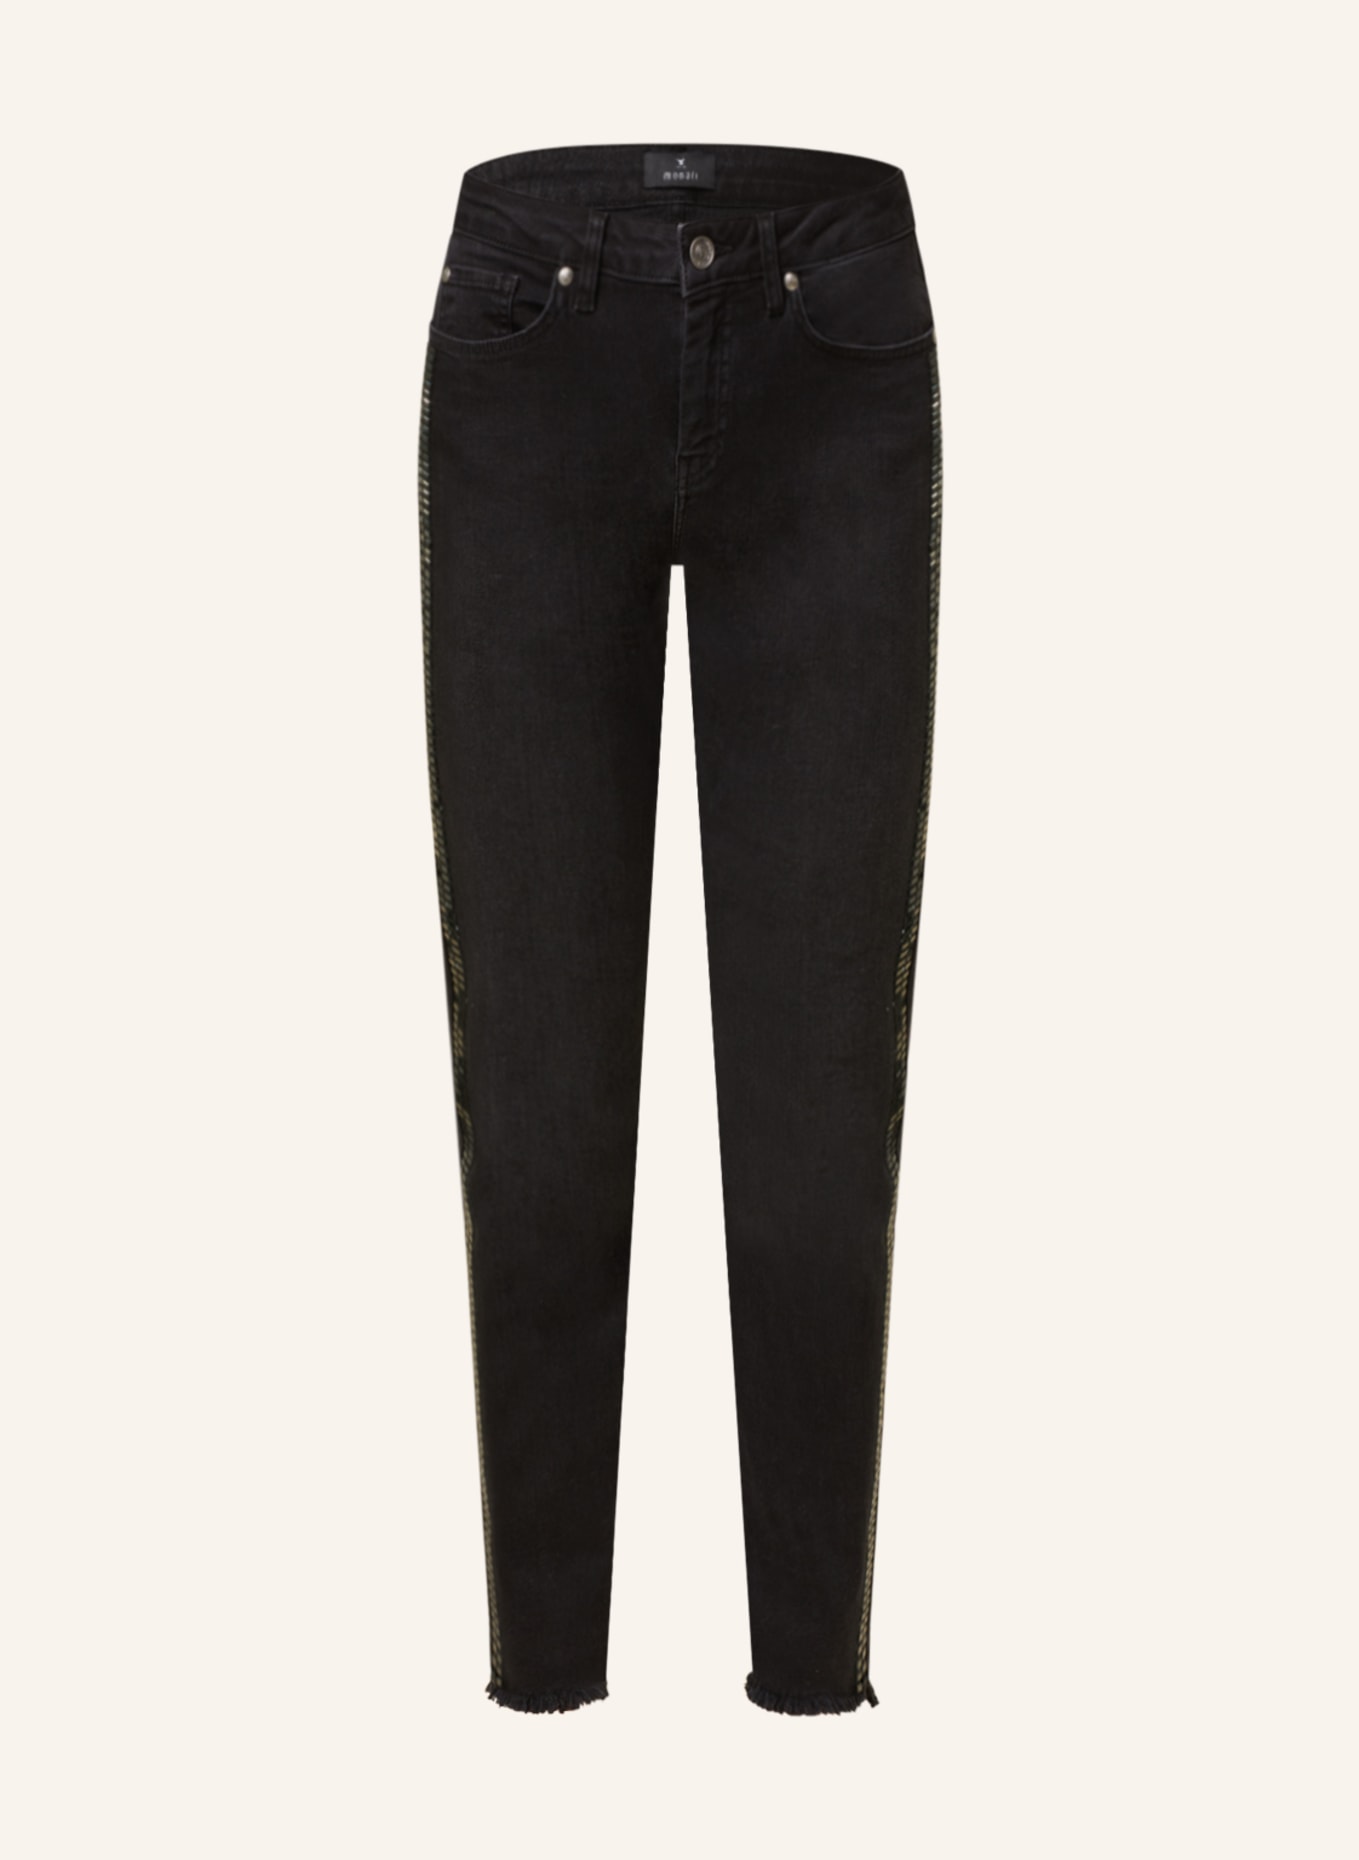 monari Skinny Jeans mit Schmucksteinen, Farbe: 999 SCHWARZ (Bild 1)